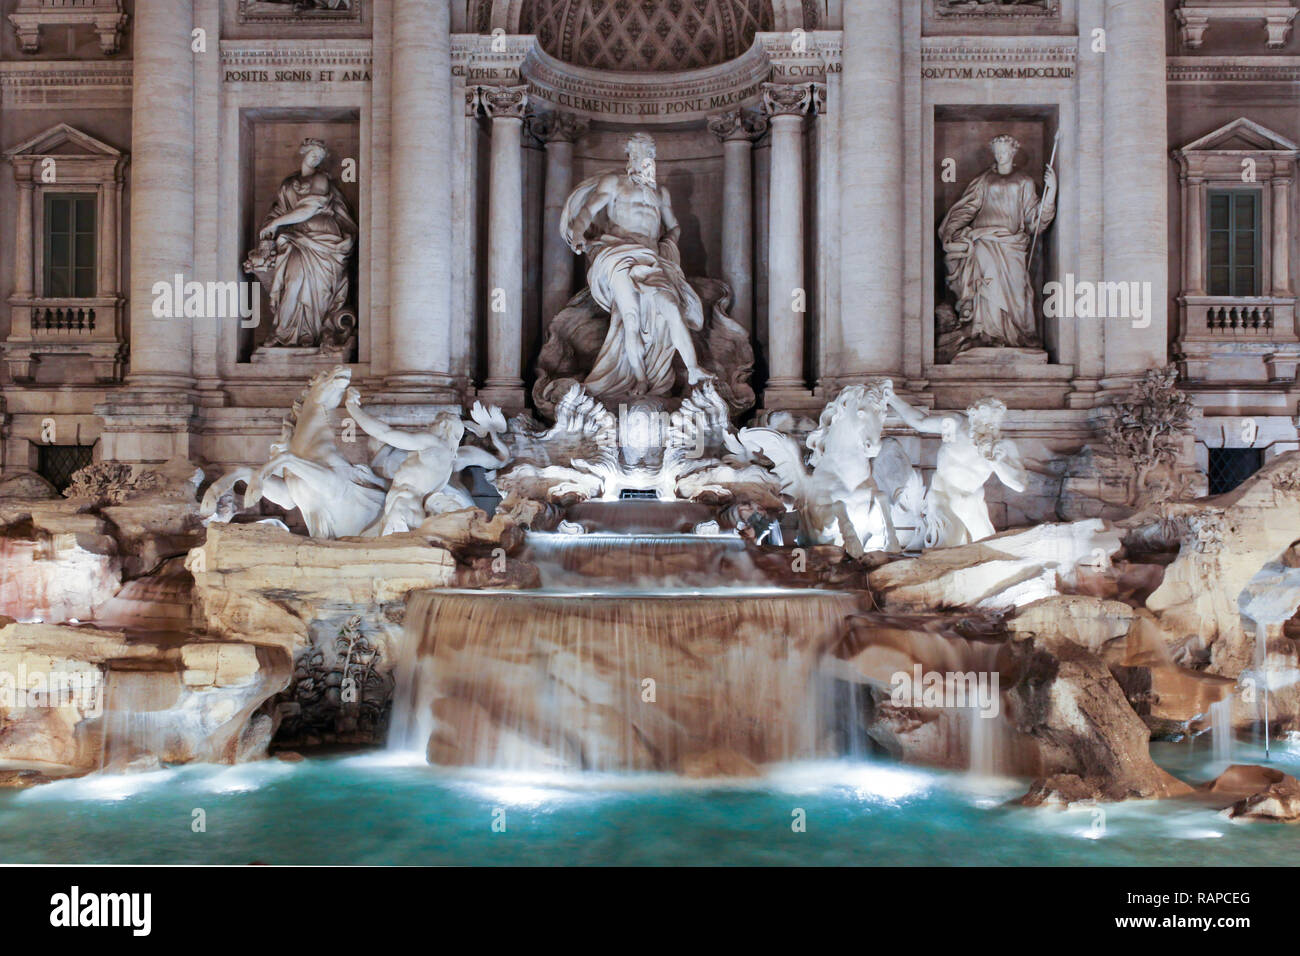 Den Trevi-Brunnen in Rom ist die größte barocke Springbrunnen der Stadt und einer der berühmtesten Brunnen der Welt. Stockfoto